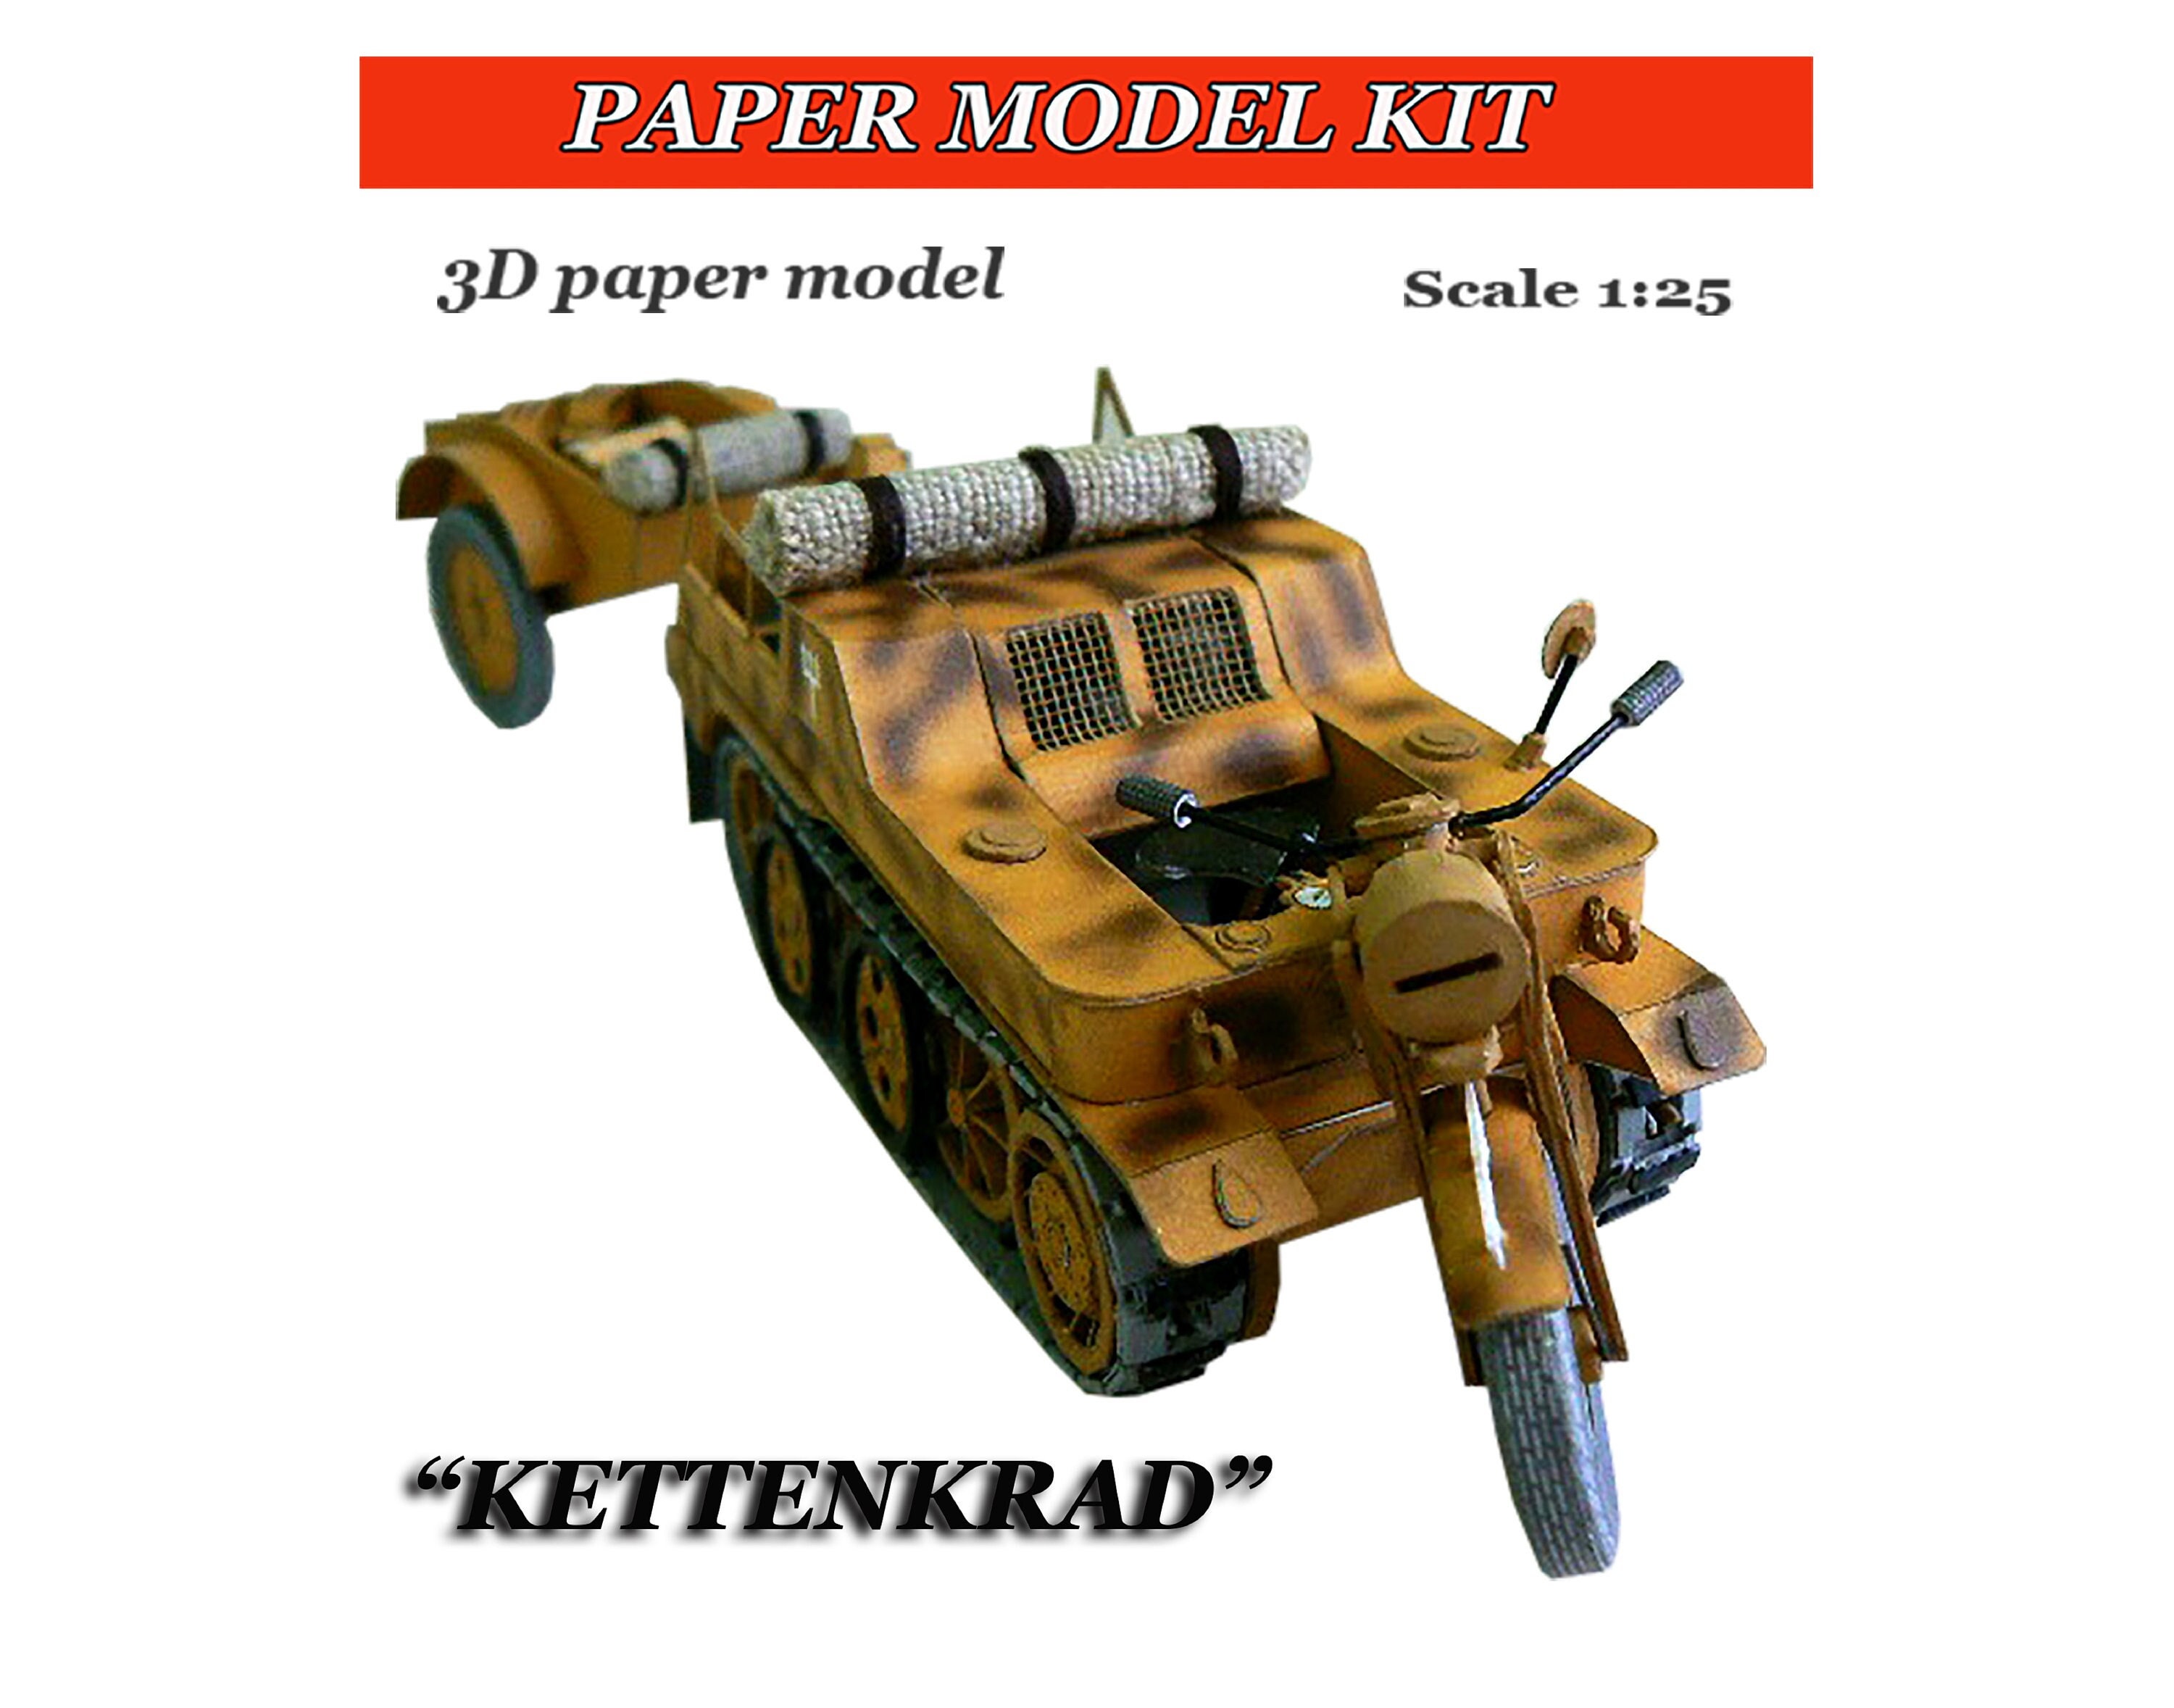 Papiermodell Auto Papercraft 3D Papierauto handgemacht Papier Modell pläne  Dateien zum Ausdrucken Auto Schneiden und Zusammenbau Auto - .de